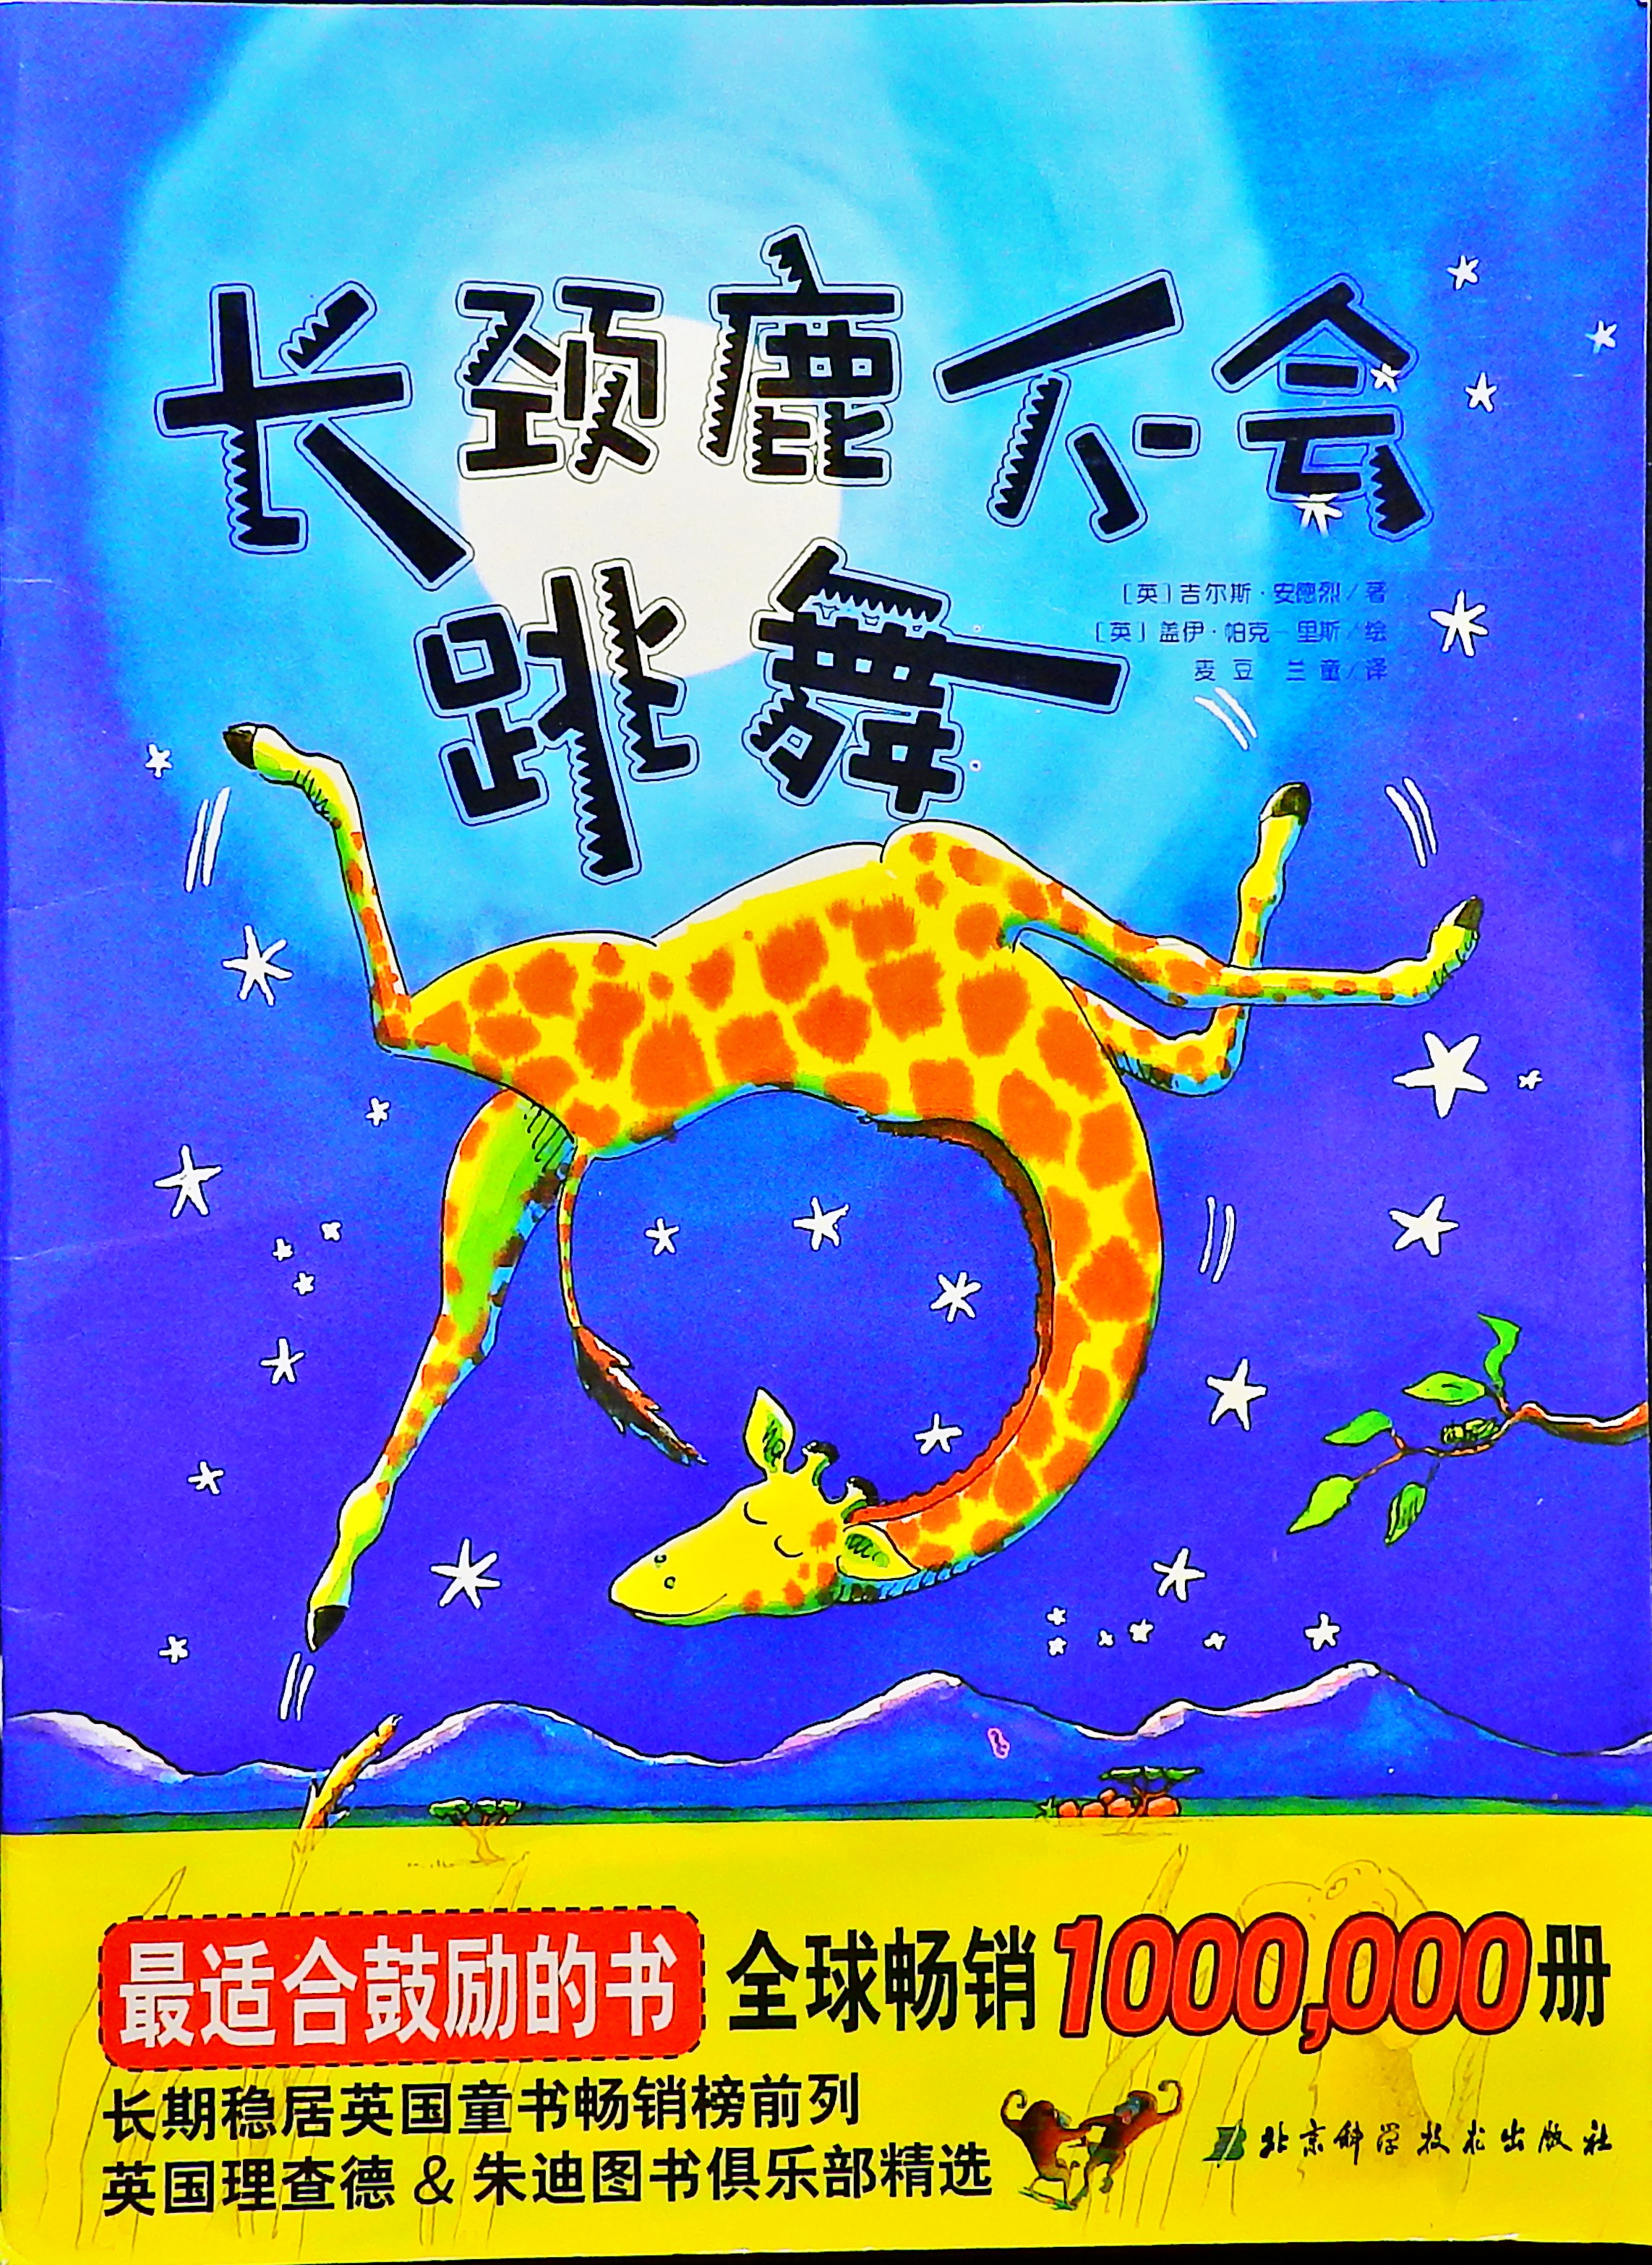 长颈鹿不会跳舞 (01),绘本,绘本故事,绘本阅读,故事书,童书,图画书,课外阅读